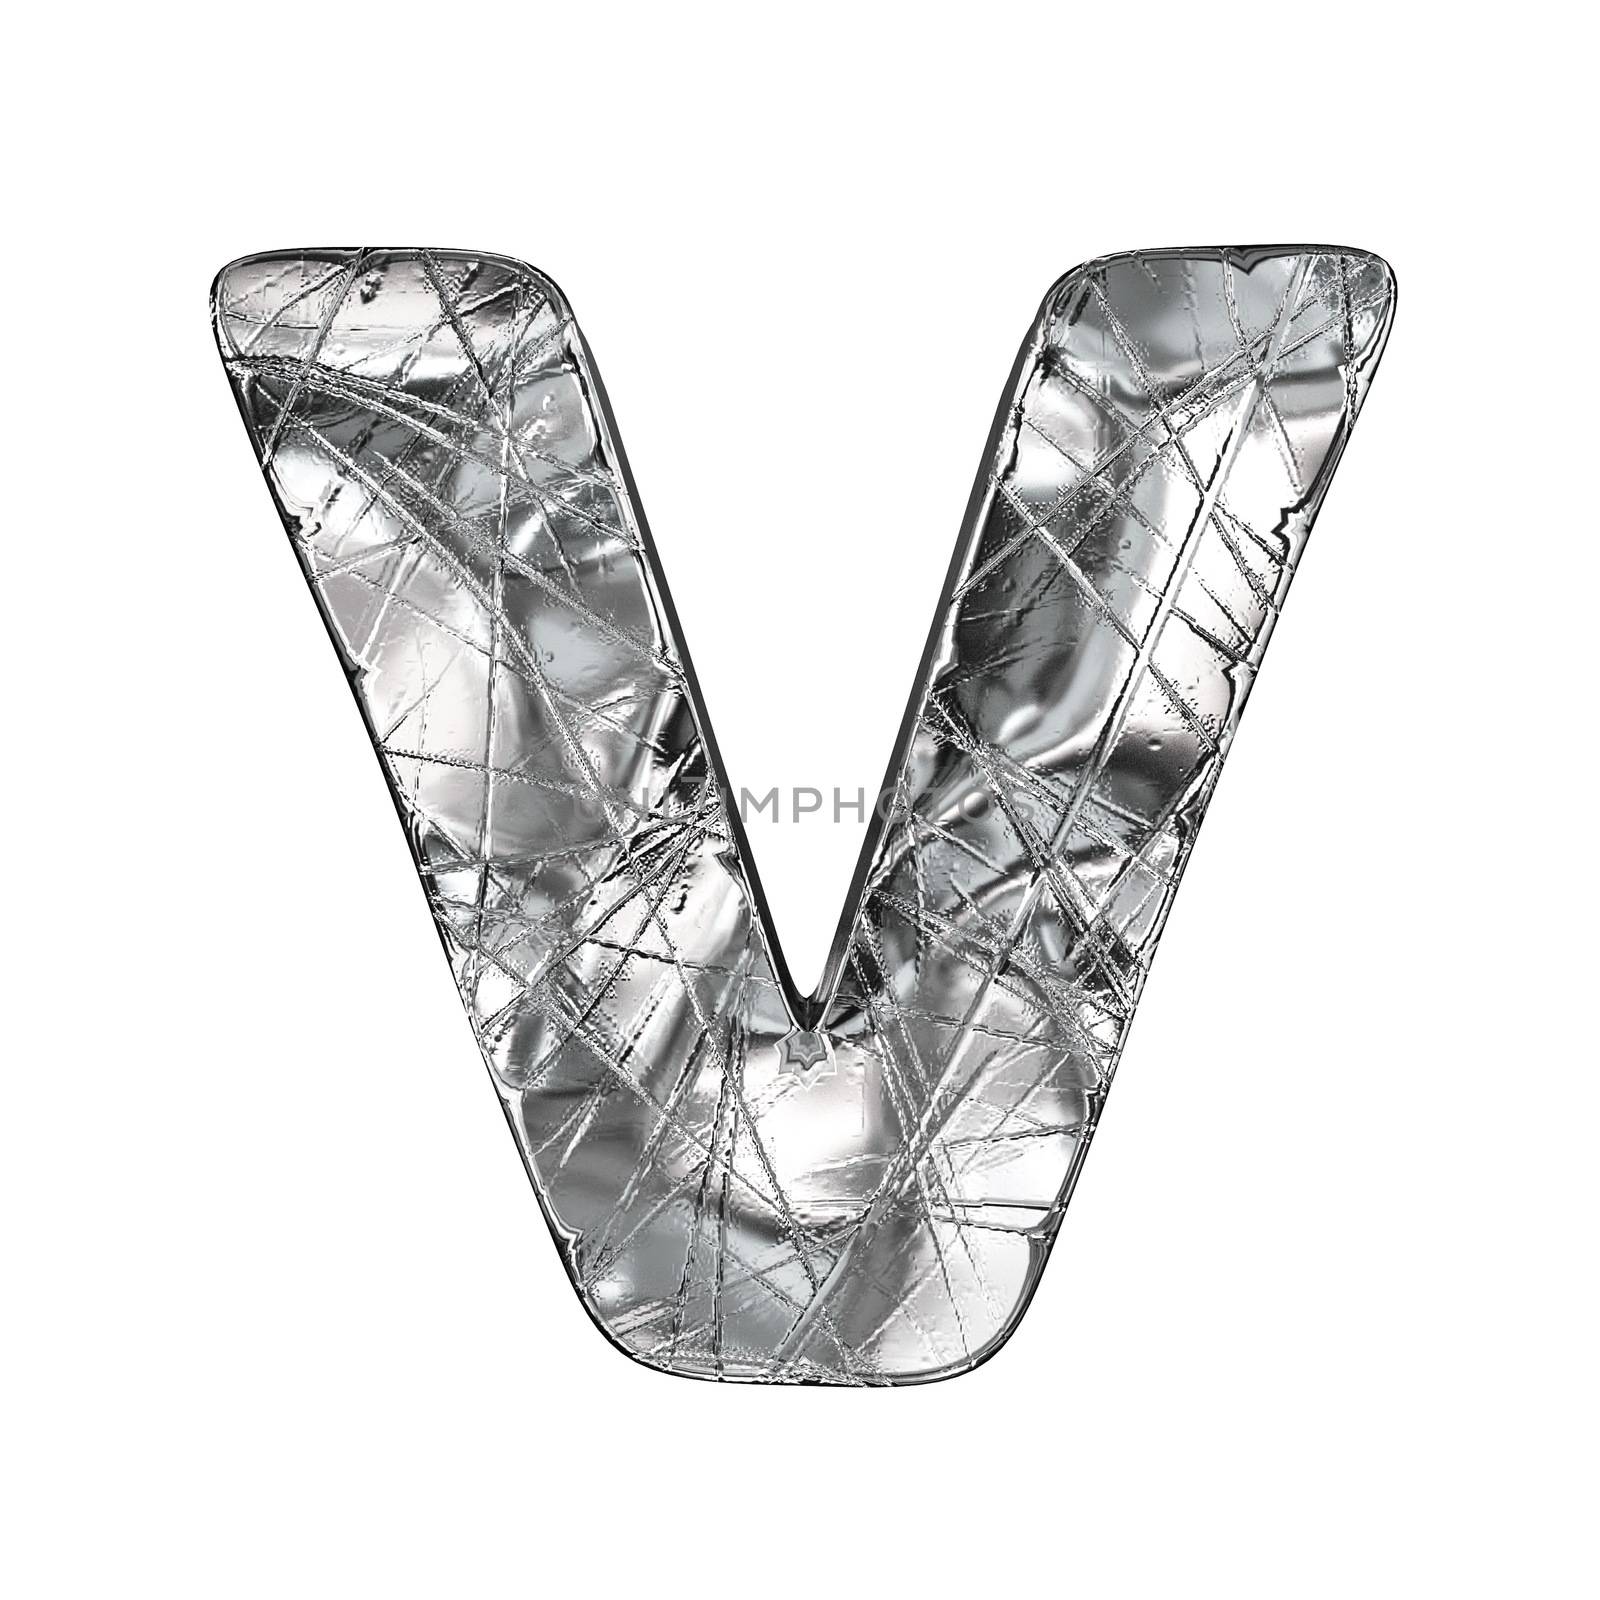 Grunge aluminium foil font letter V 3D render illustration isolated on white background